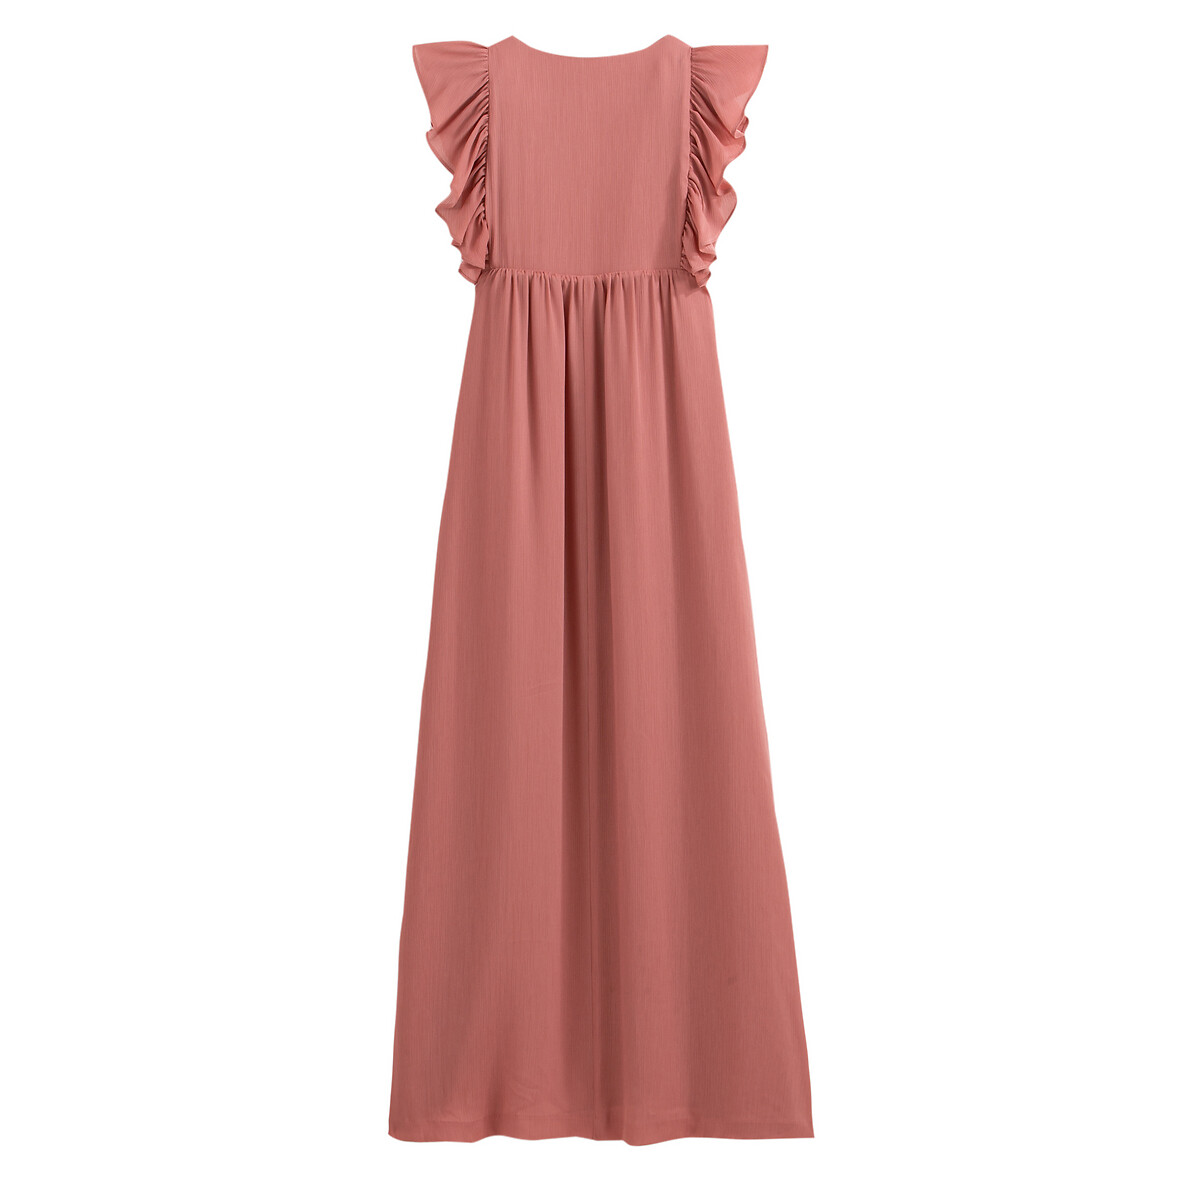 Платье La Redoute Длинное без рукавов 40 (FR) - 46 (RUS) розовый, размер 40 (FR) - 46 (RUS) Длинное без рукавов 40 (FR) - 46 (RUS) розовый - фото 3